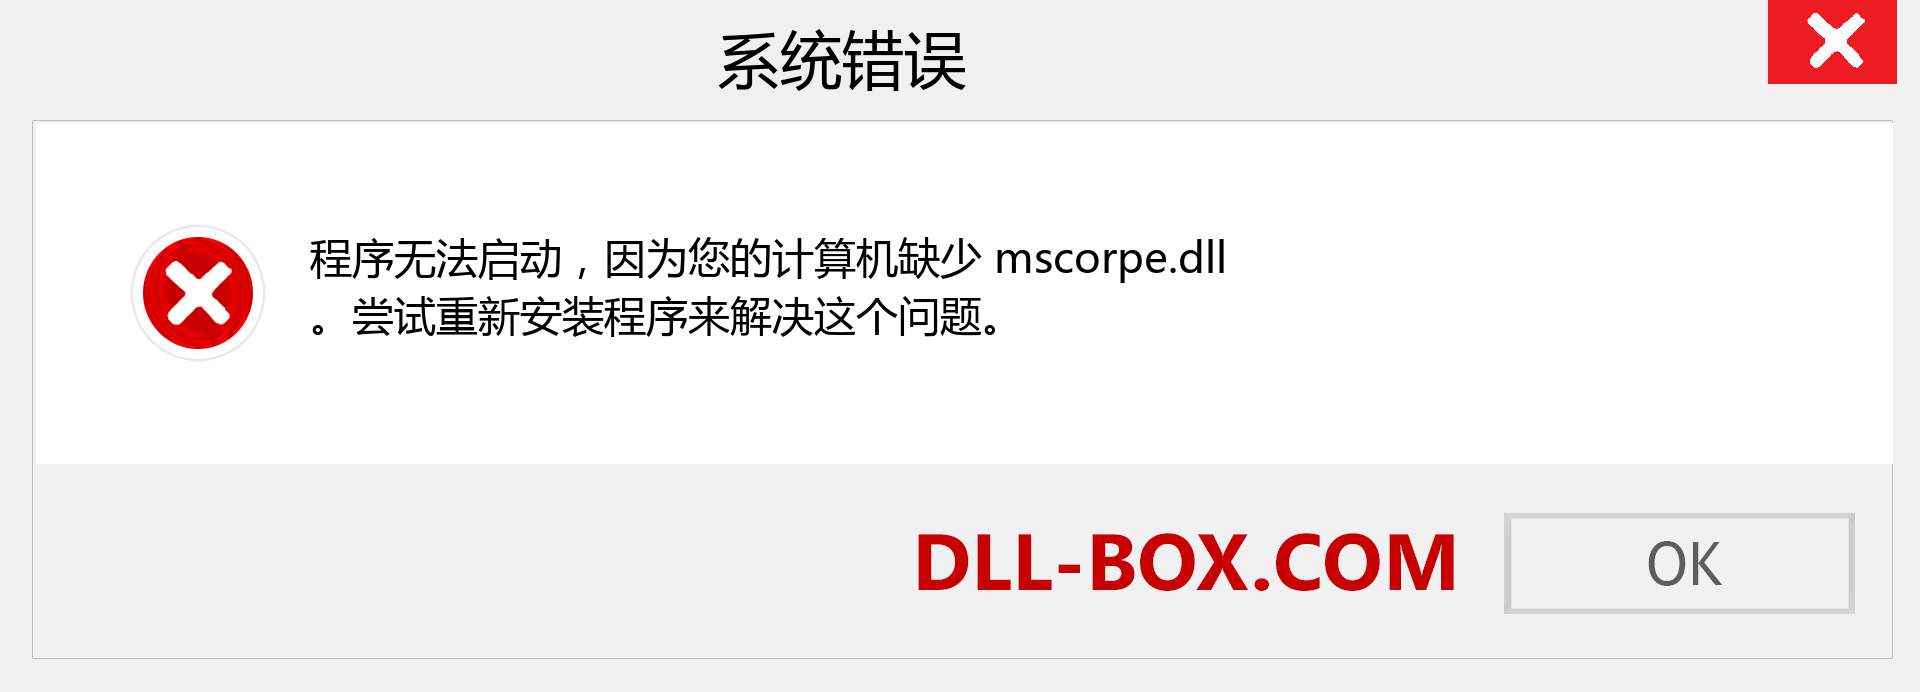 mscorpe.dll 文件丢失？。 适用于 Windows 7、8、10 的下载 - 修复 Windows、照片、图像上的 mscorpe dll 丢失错误